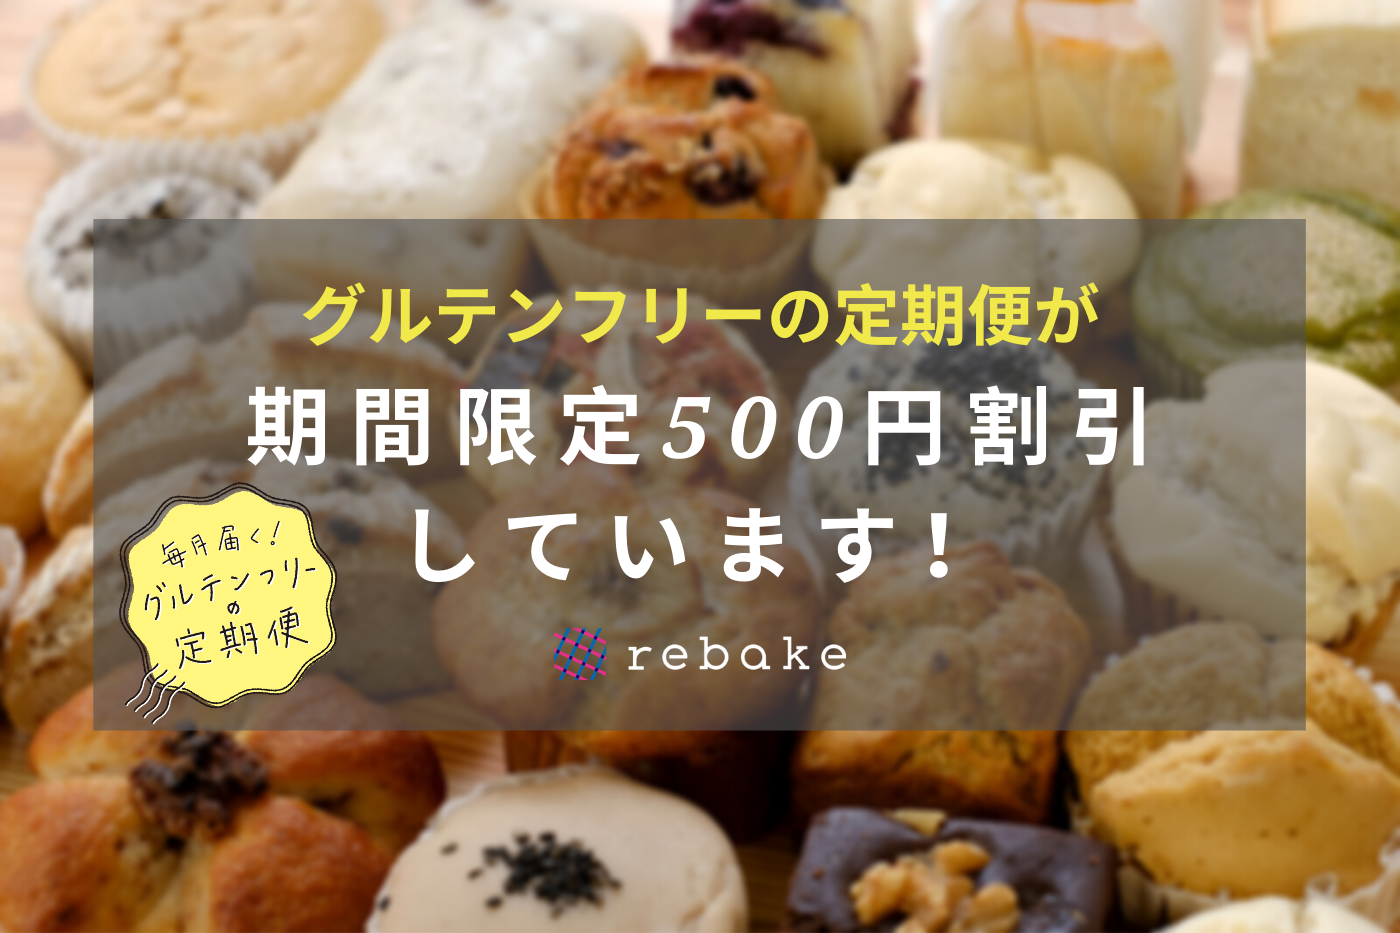 京都の紡(つむぎ) cafe、
バレンタインキャンペーンを2月6日～開催！
SNSで話題のグリーンティー・マーブルチーズケーキを
毎日先着10名様に提供